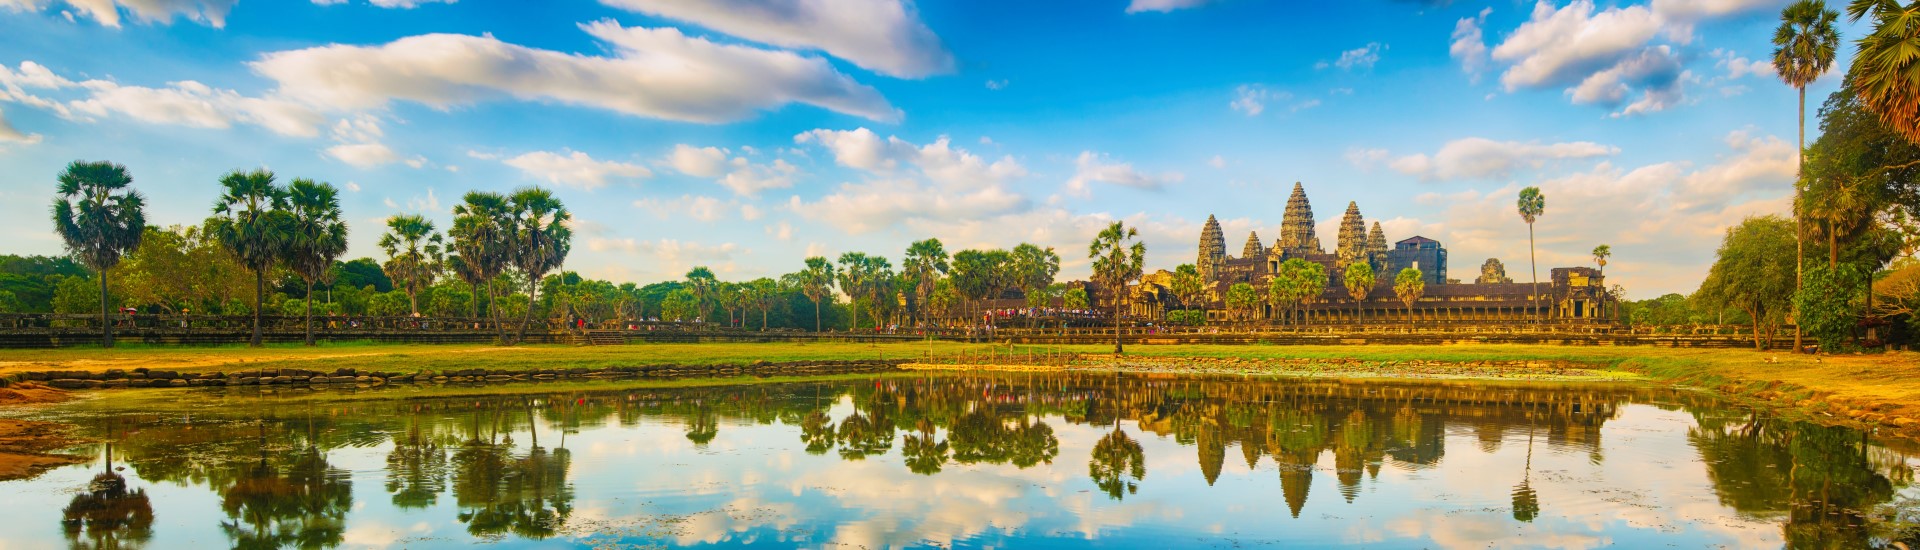 Angkor Wat - Wahrzeichen der Khmer